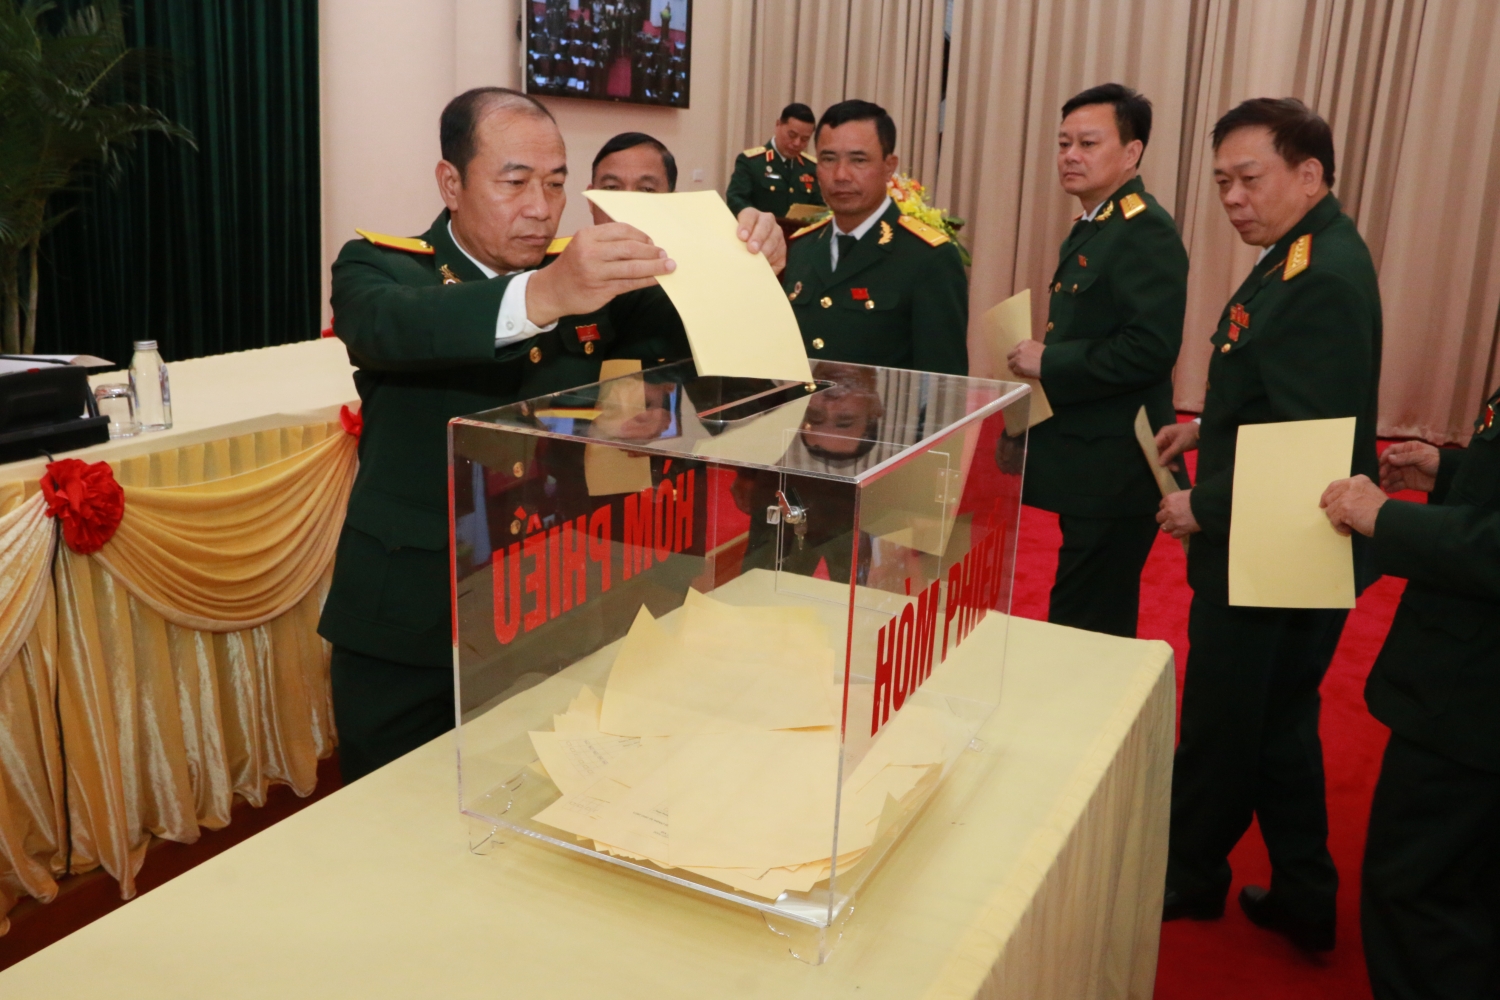 Tiếp tục phát huy truyền thống anh hùng, lịch sử vẻ vang của Hội Cựu chiến binh Việt Nam trong nhiệm kỳ mới